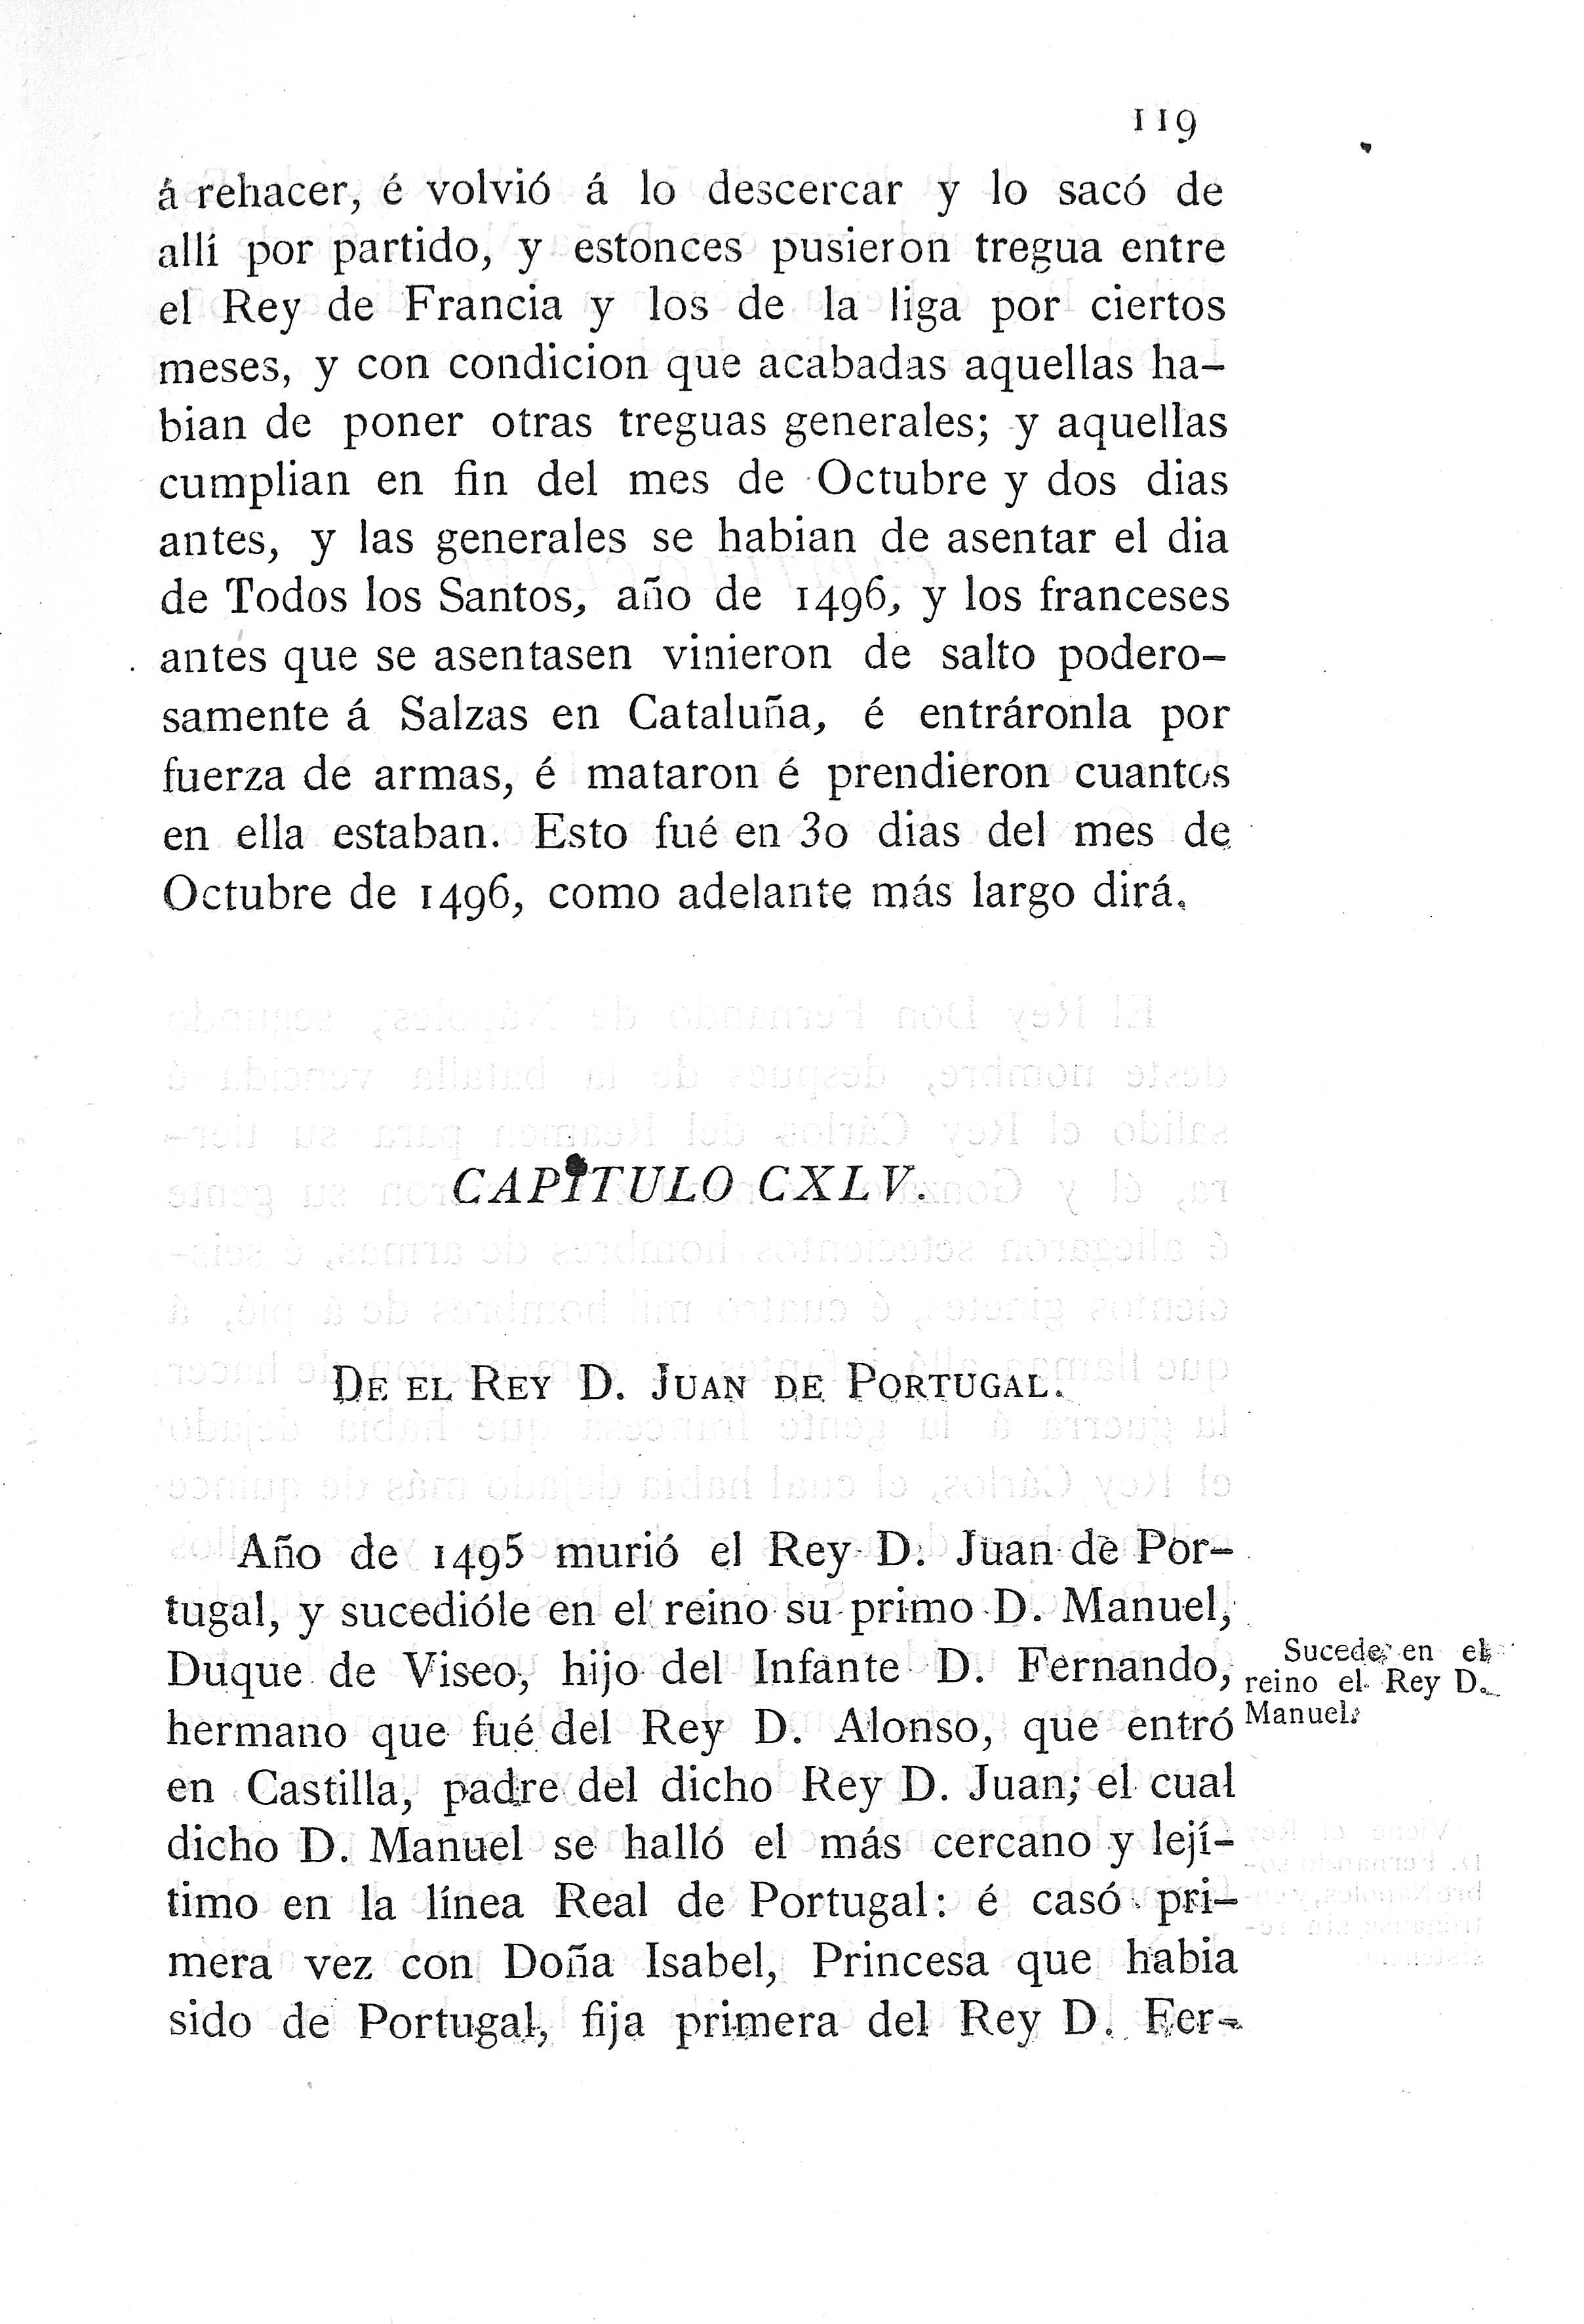 CXLV. Del Rey D. Juan de Portugal